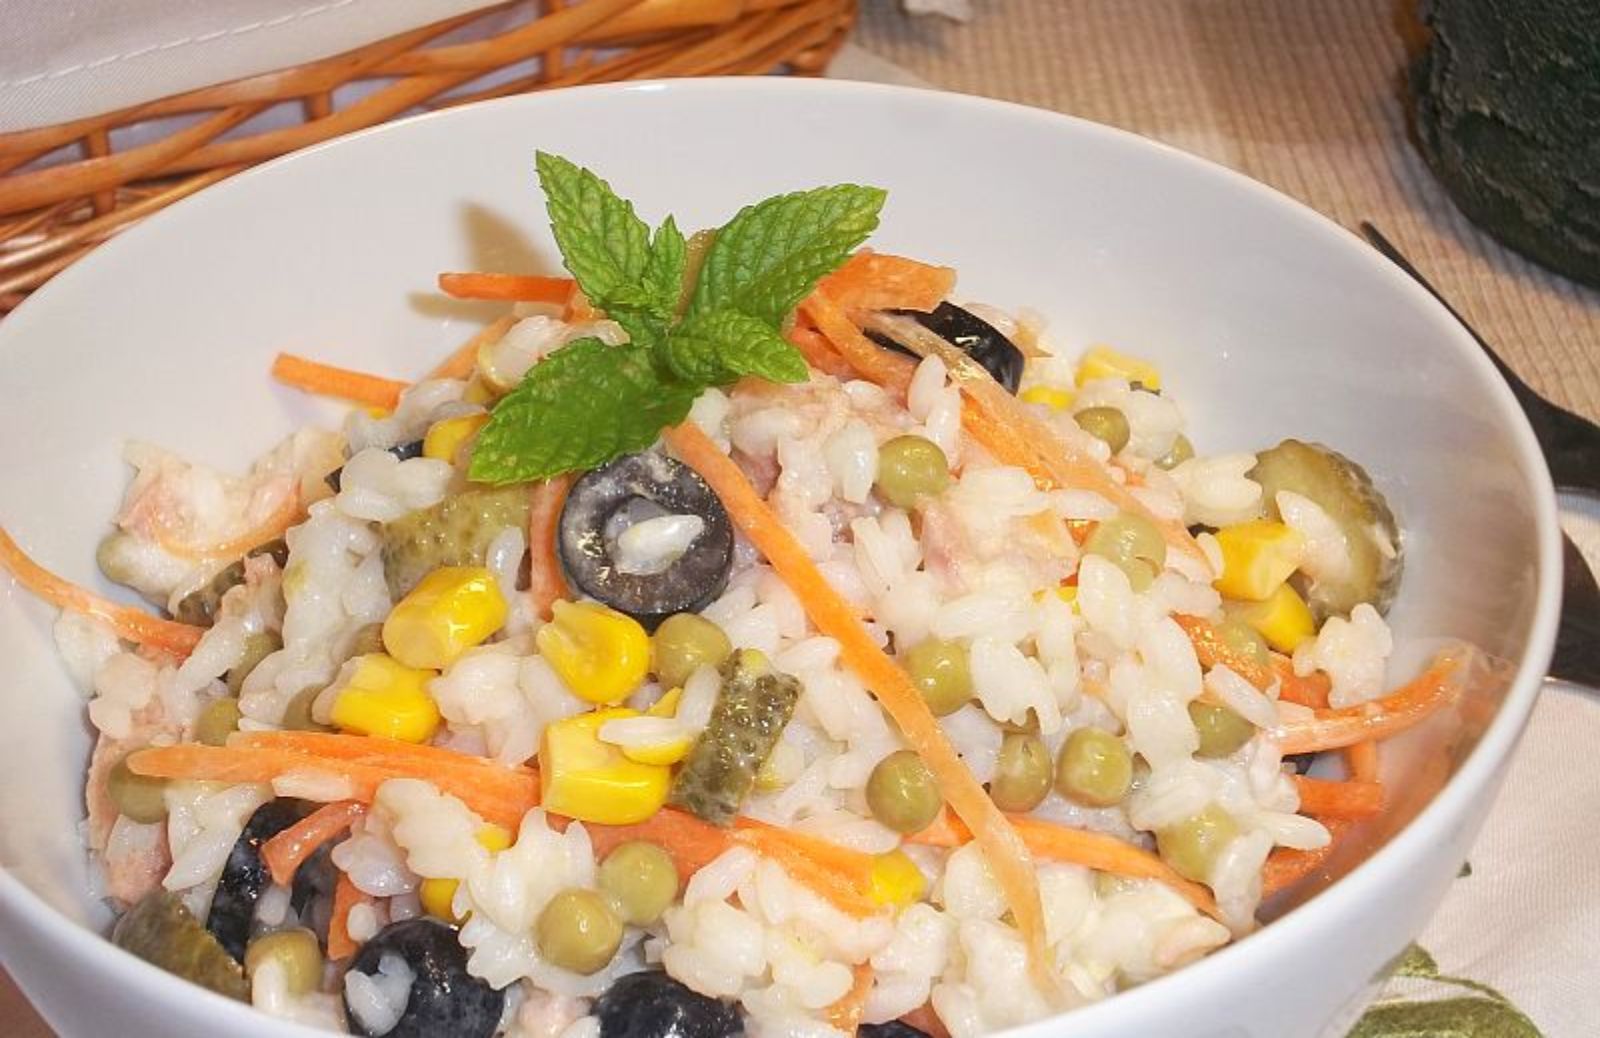 Insalata di riso: la ricetta del piatto estivo per eccellenza